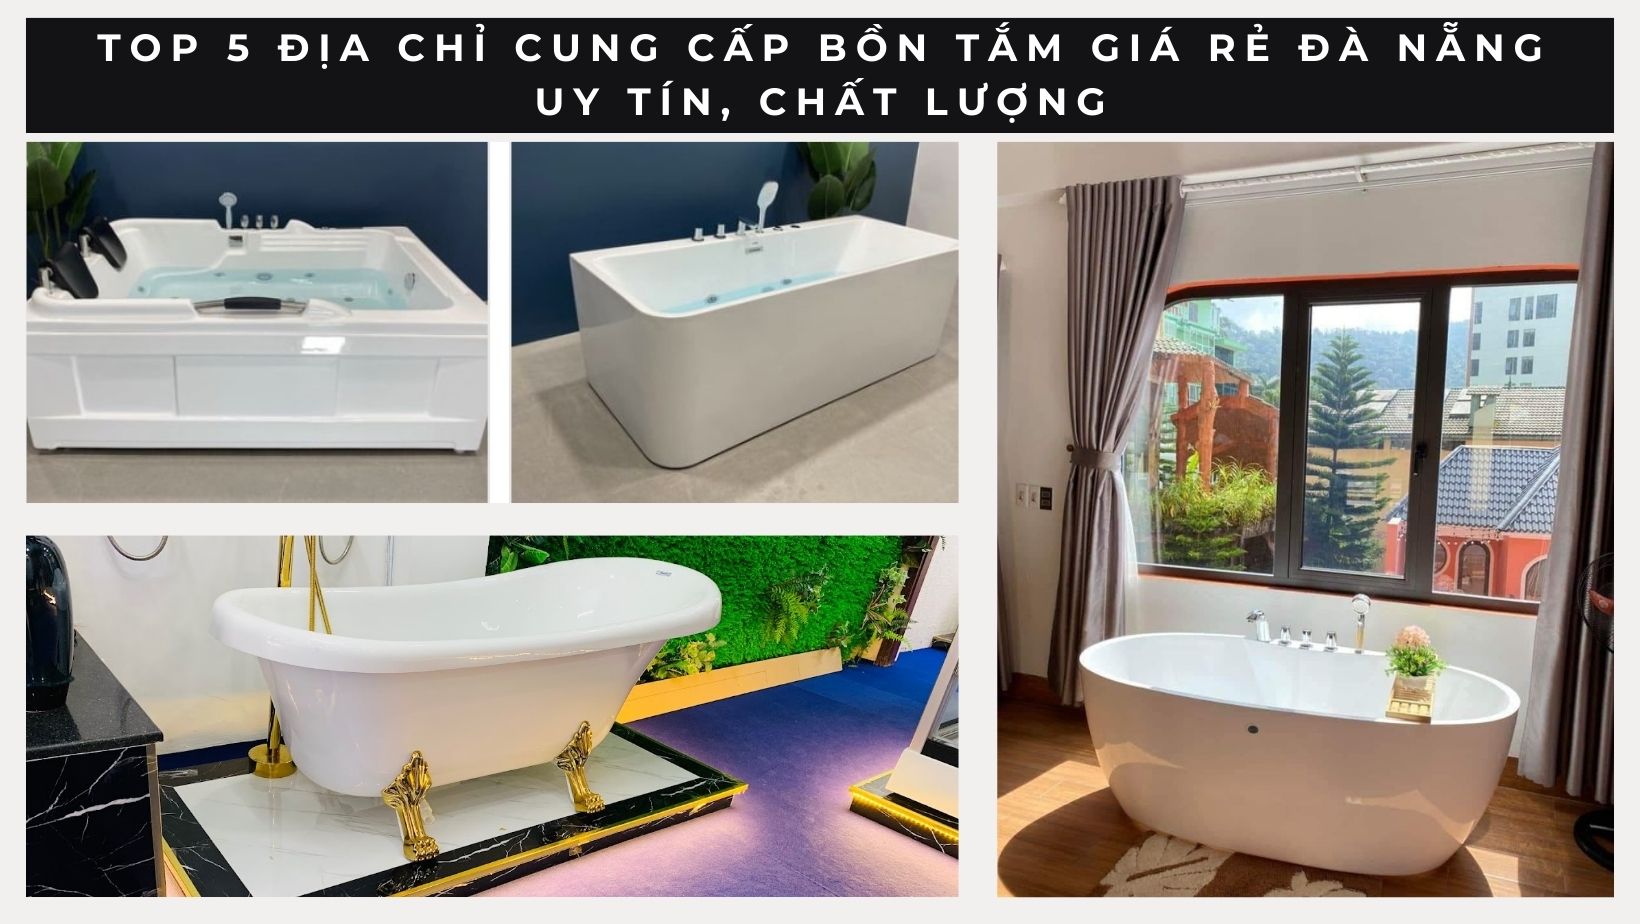 Top 5 địa chỉ cung cấp bồn tắm giá rẻ Đà Nẵng uy tín